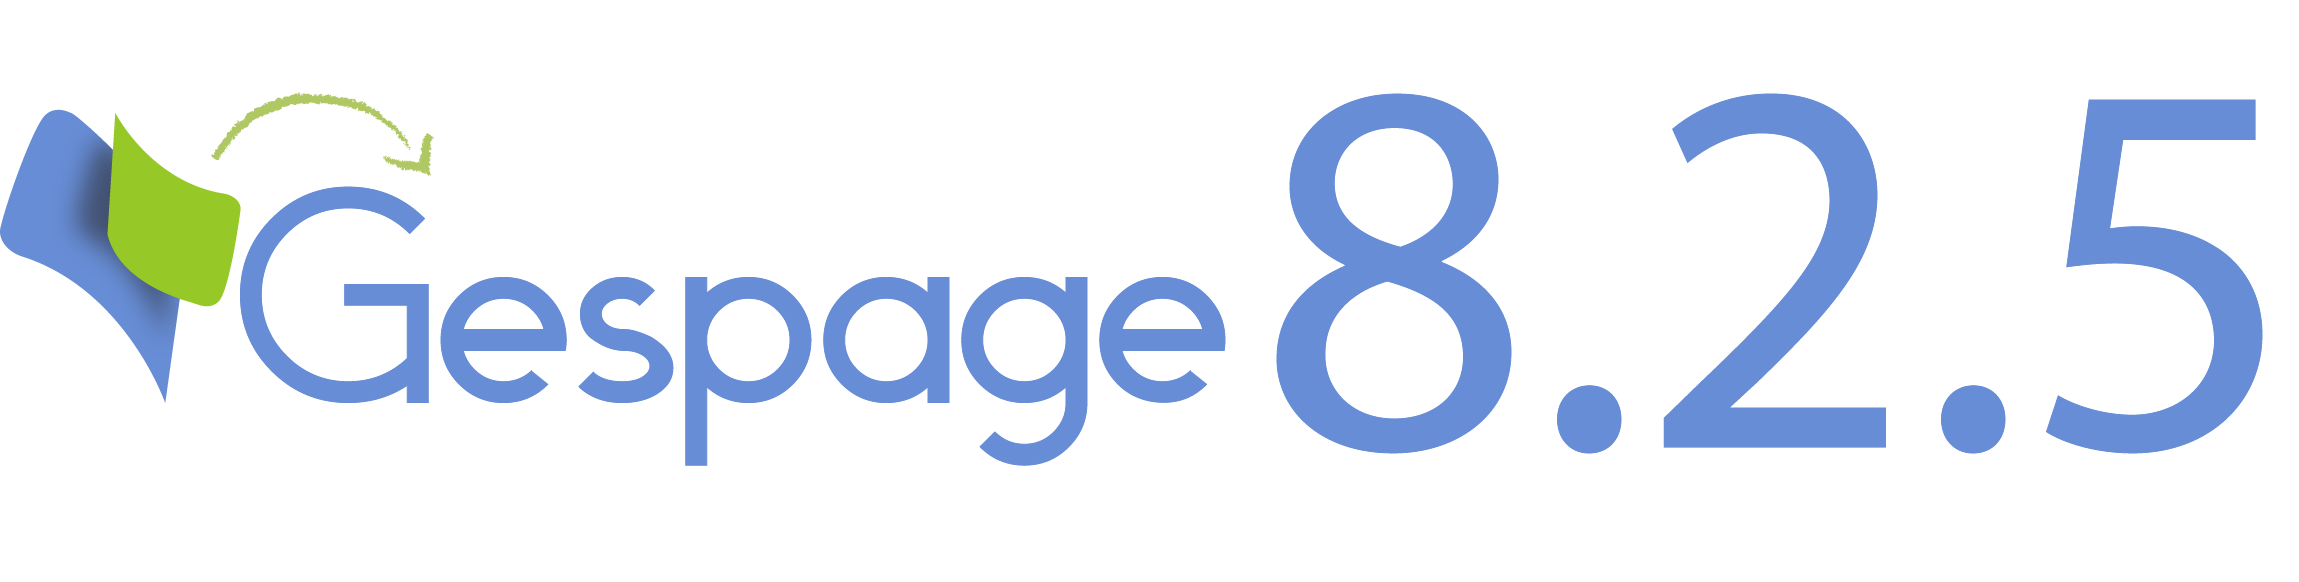 Nouvelle version 8.2.5 de Gespage 5 • Gespage